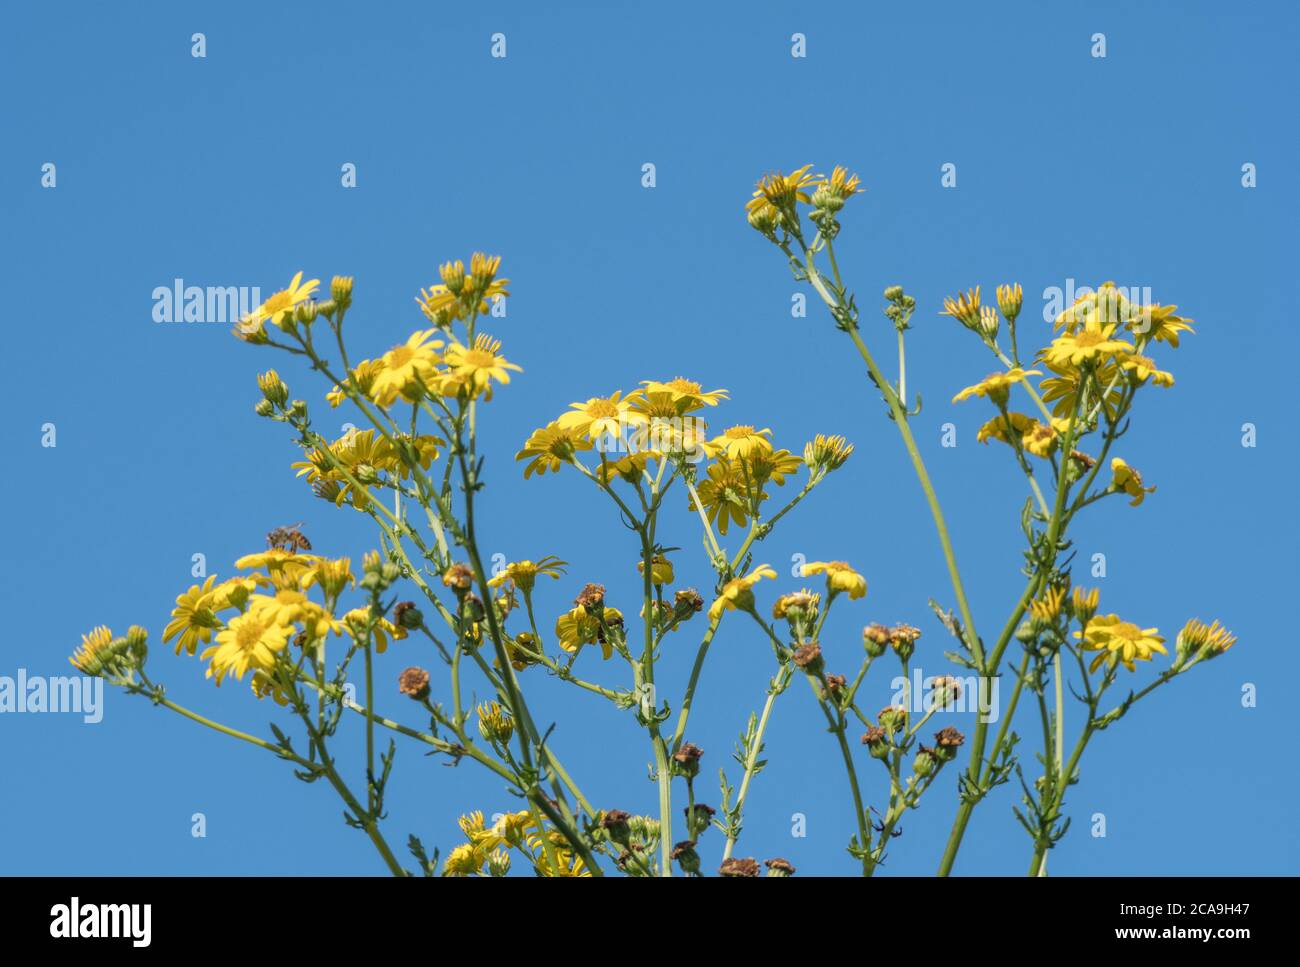 Blauer Himmel und gelbe Blüten der Gemeinen Ragwort / jacobaea vulgaris syn Senecio jacobaea der Asteraceae. Eine schädliche landwirtschaftliche Unkraut nach Unkraut Gesetz. Stockfoto